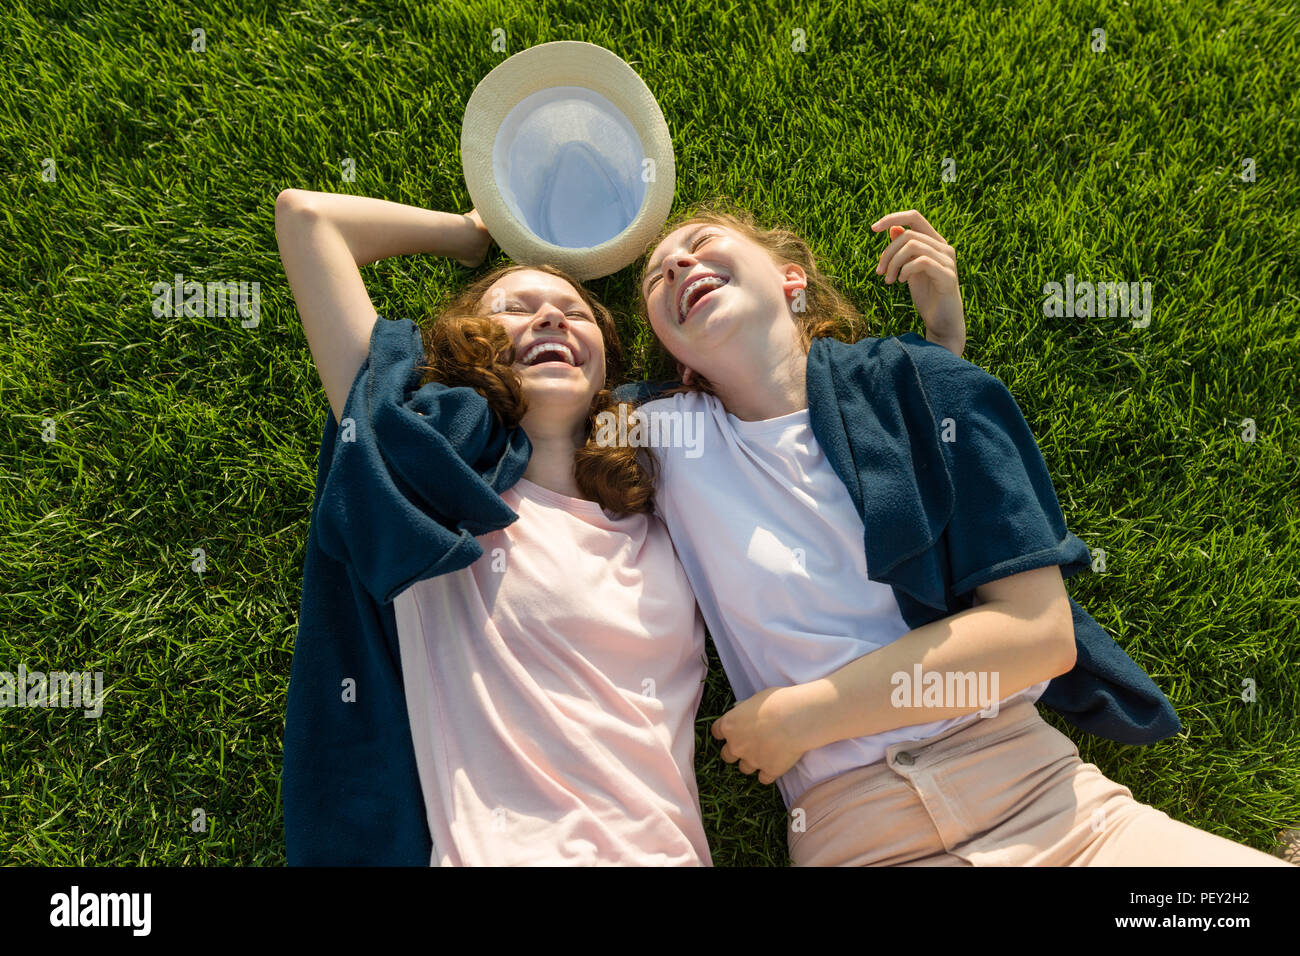 Mädchen jugendliche Spaß haben, liegen auf dem grünen Gras, Lachen, Ansicht von oben Stockfoto